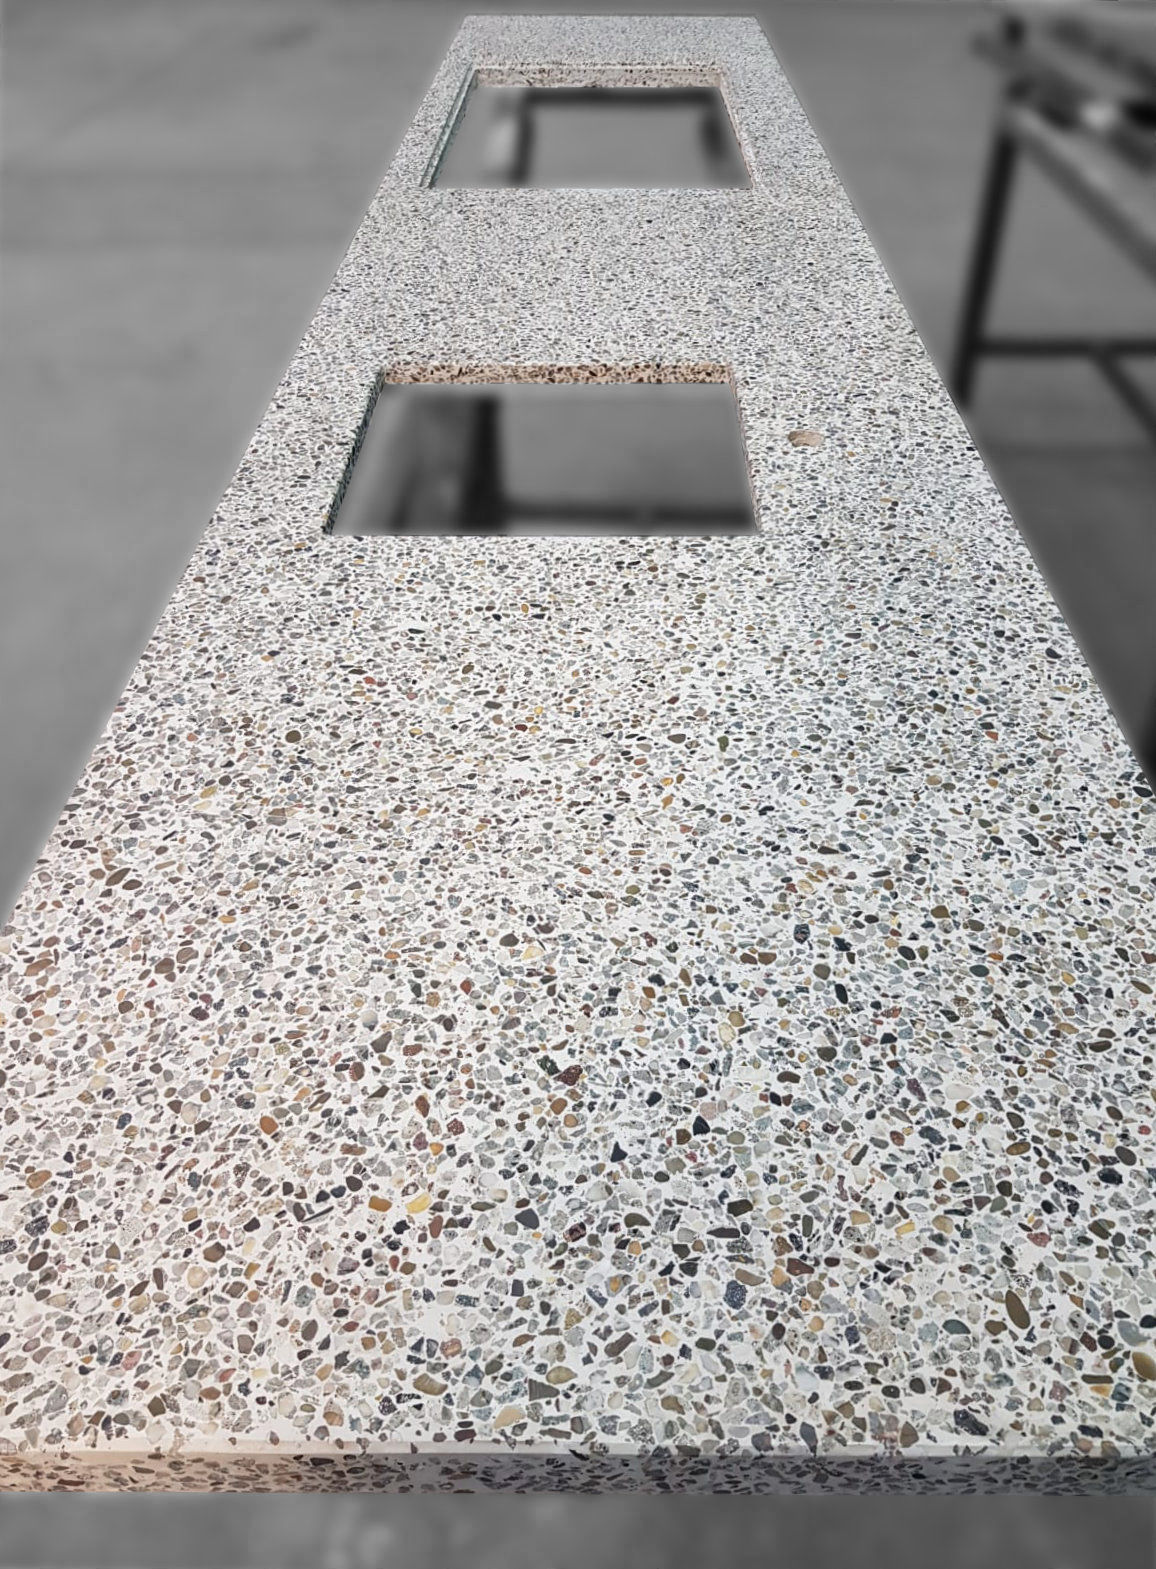 Diggels keukenblad van gerecycled beton